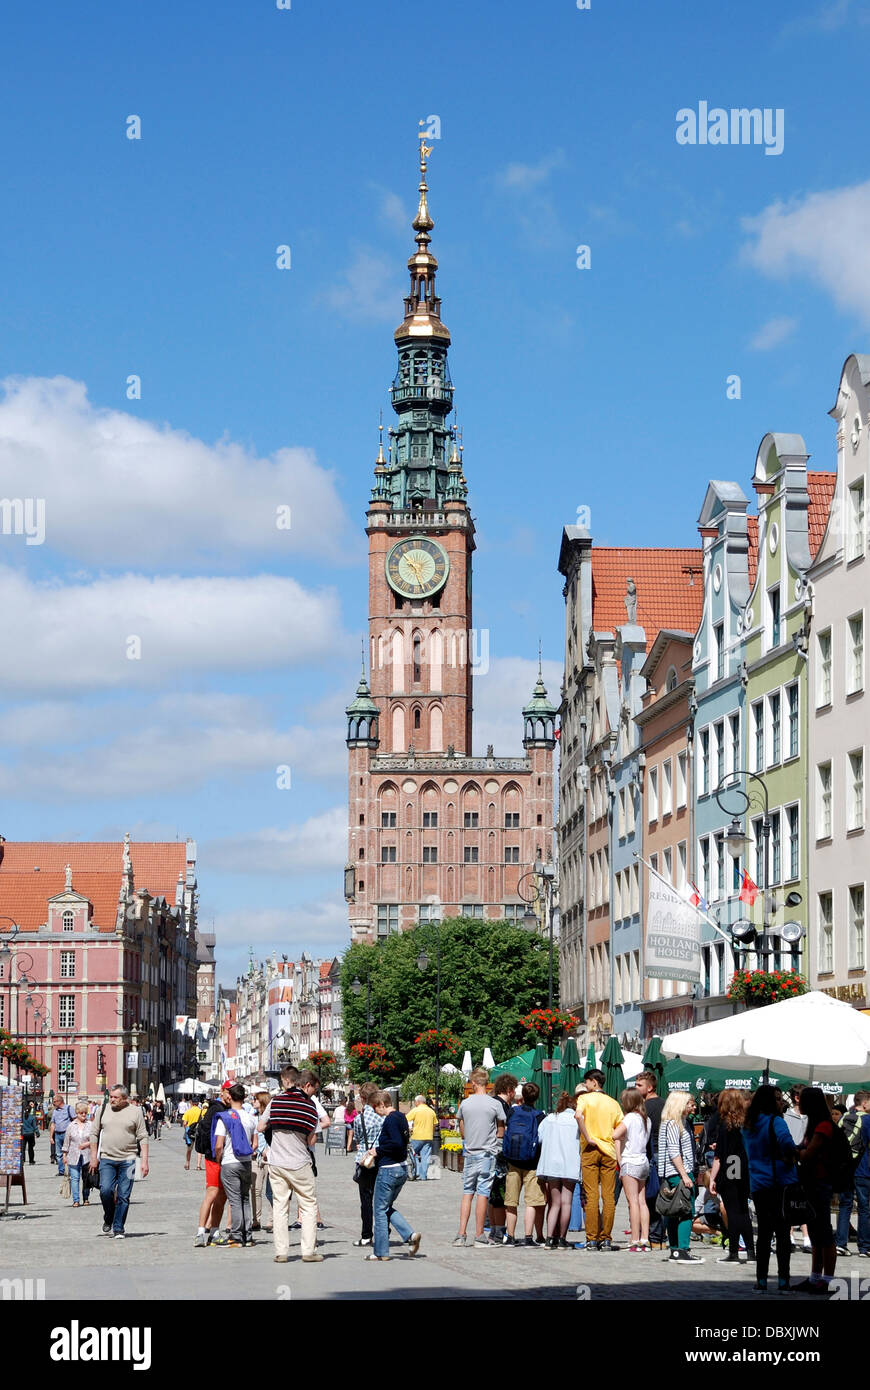 Historische Altstadt von Danzig mit dem Rathaus am langen Markt. Stockfoto